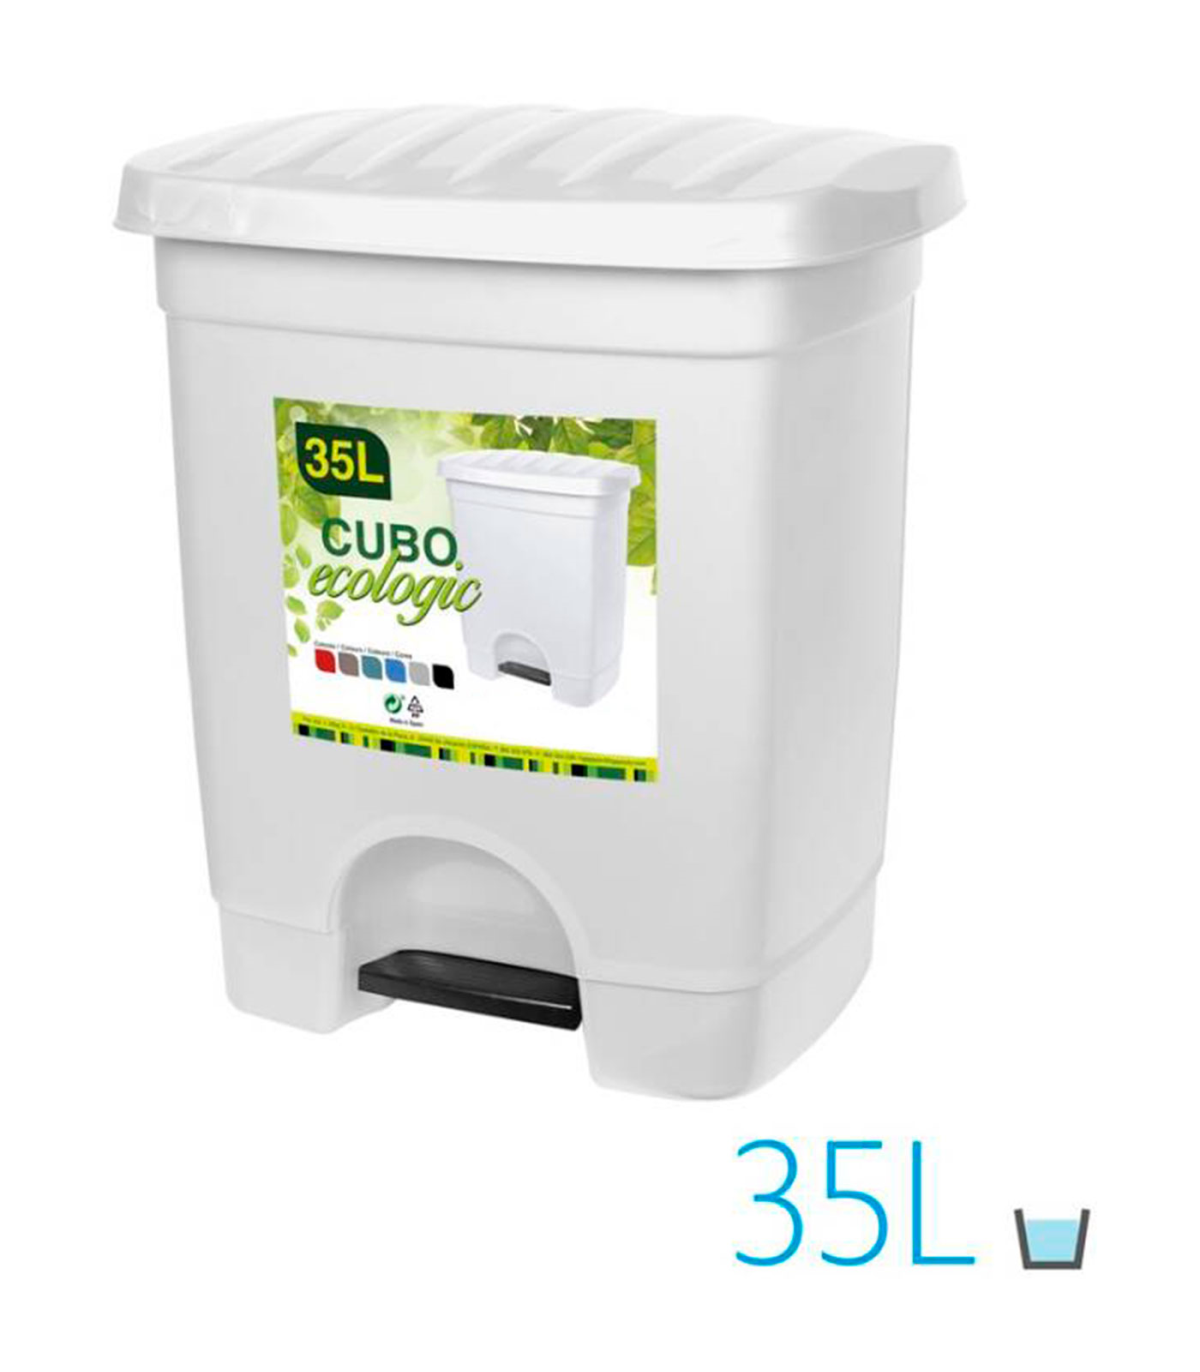 Tradineur - Cubo de basura con pedal, 1 compartimento, plástico, contenedor  de residuos, papelera, cocina, fabricado en España (